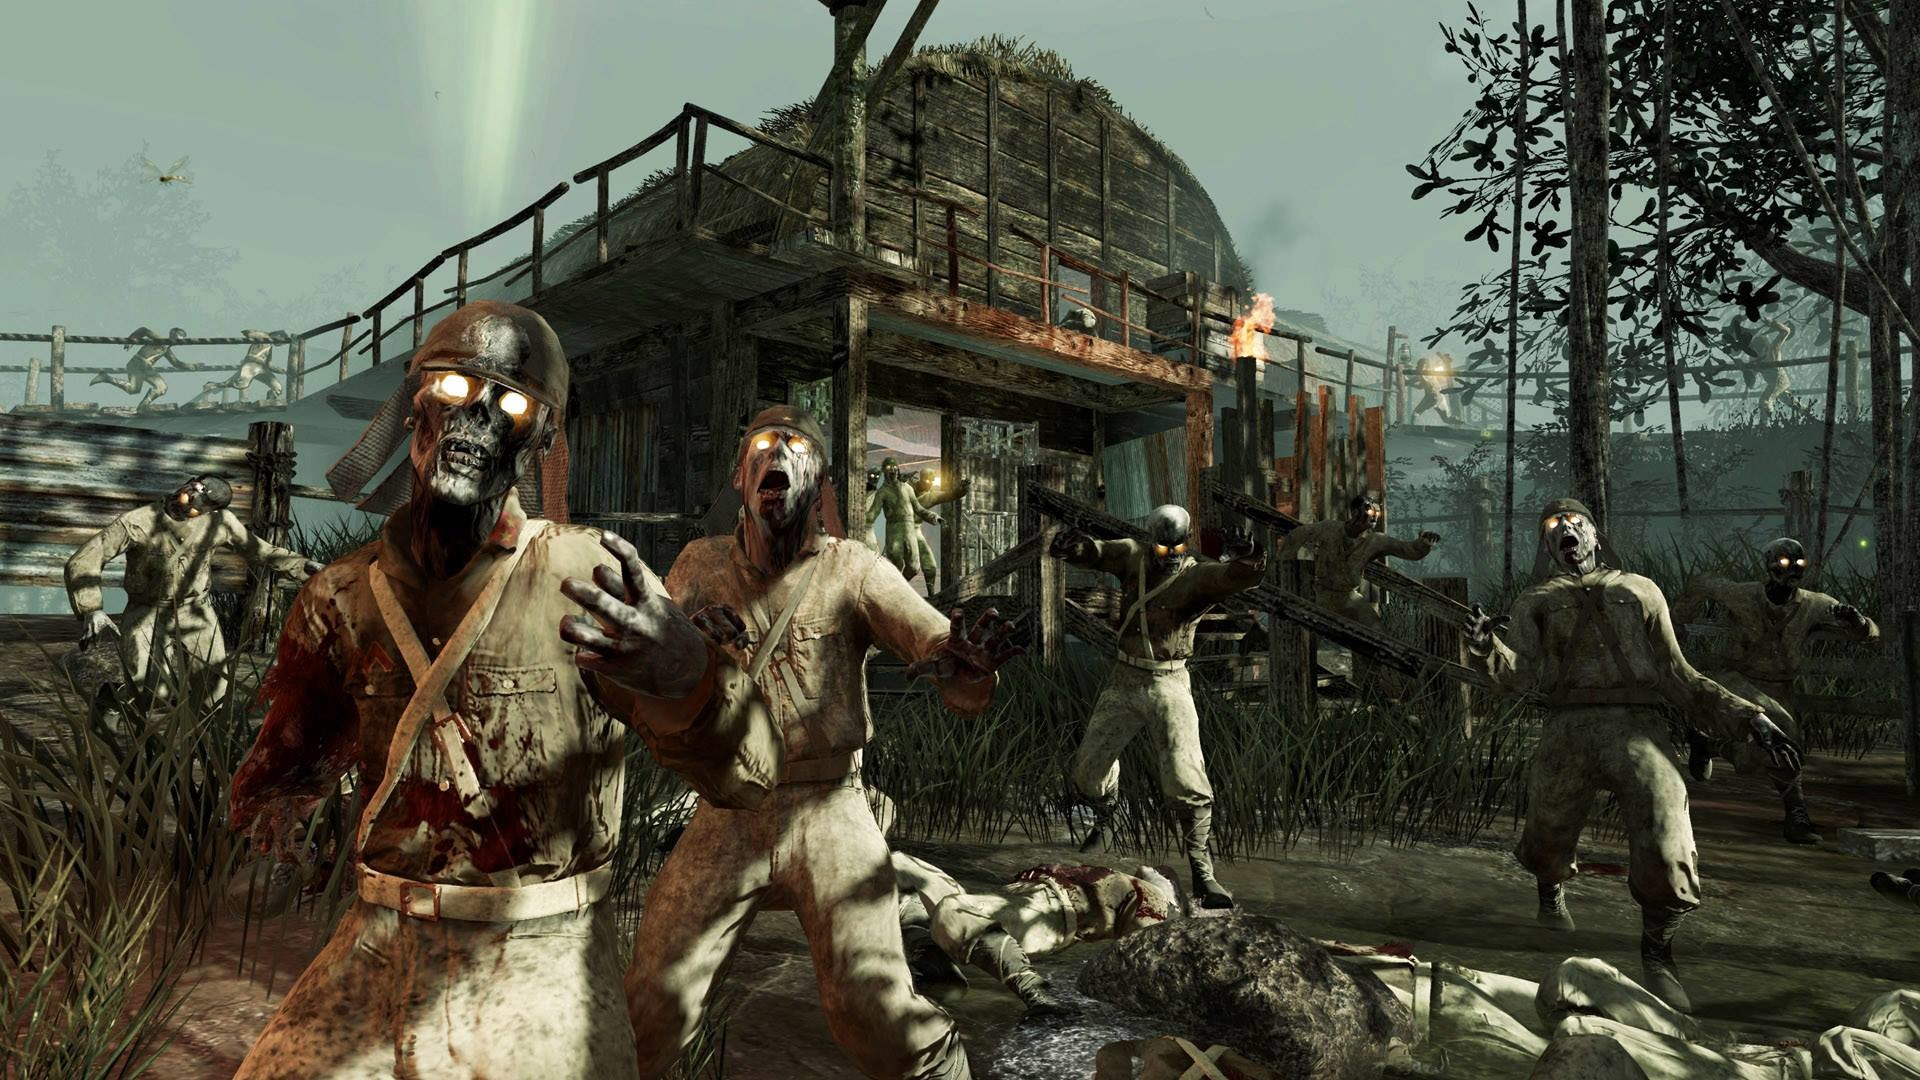 Игроки Call of Duty: Black Ops III получат доступ ко всем картам мультиплее...